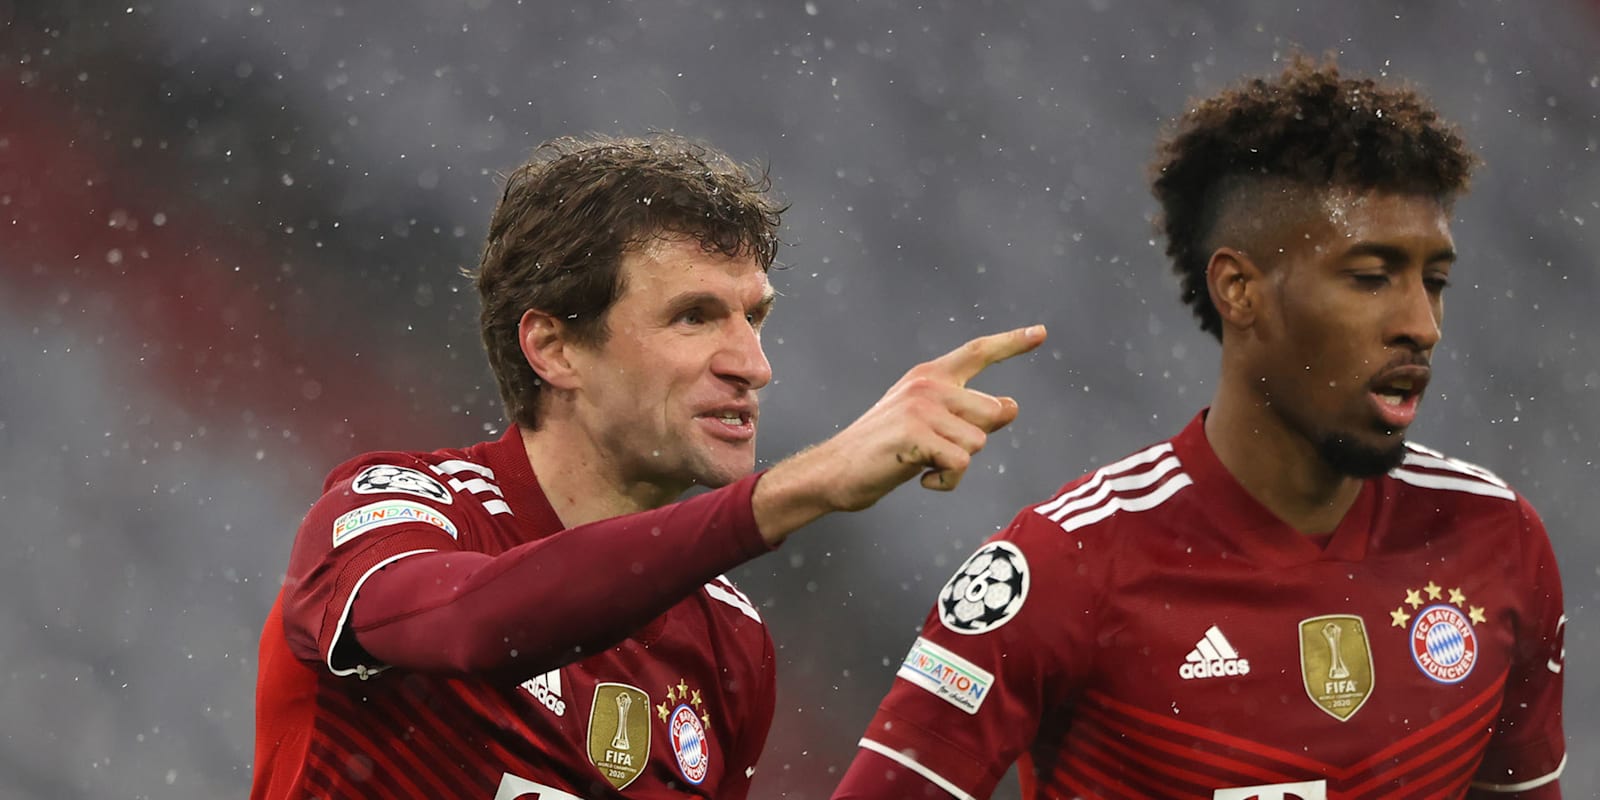 FOTO/ Muller tallet me Barçën: Më pëlqen të luaj kundër tyre, por fshin postimin në Twitter